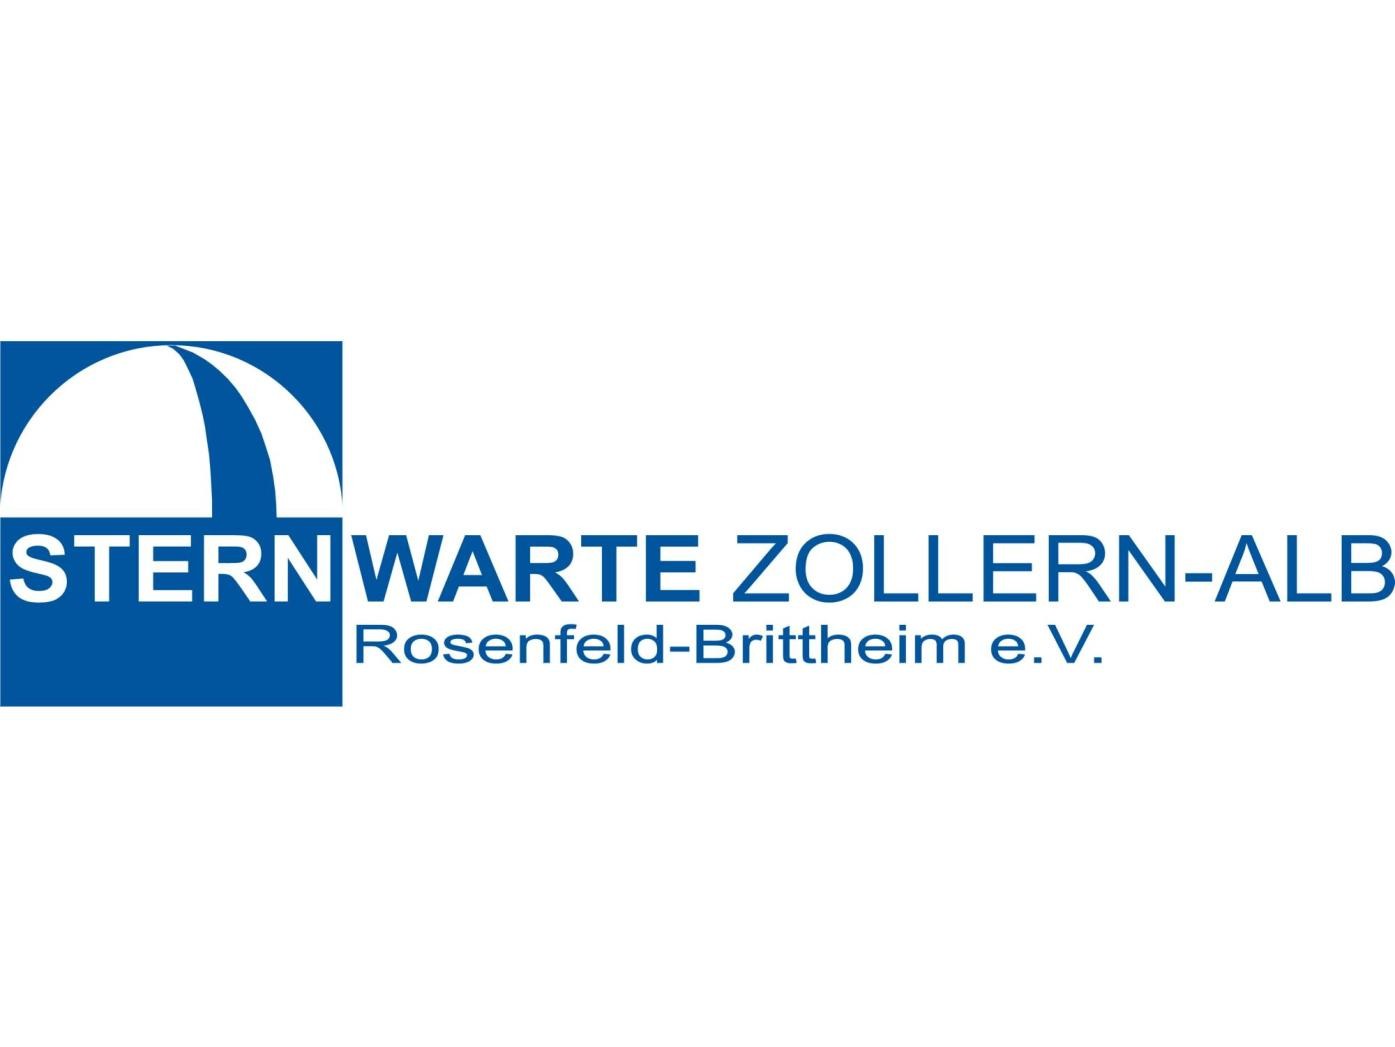 Logo Verein zur Förderung der Sternwarte Zollern-Alb, Rosenfeld-Brittheim e. V., Schrift Verein zur Förderung der Sternwarte Zollern-Alb, Rosenfeld-Brittheim e. V.